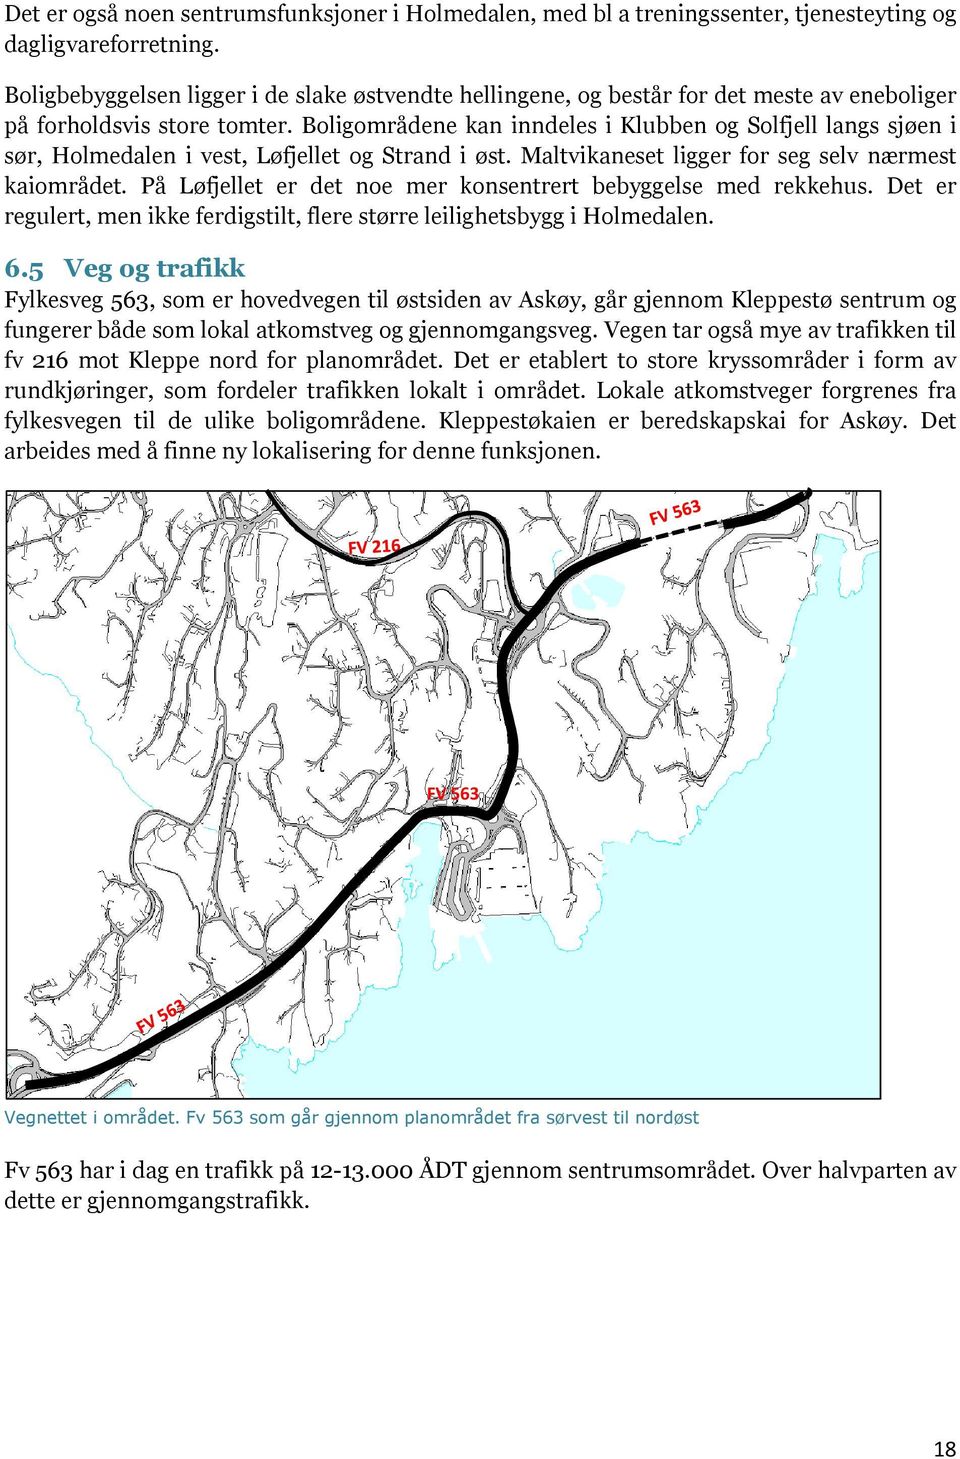 Boligområdene kan inndeles i Klubben og Solfjell langs sjøen i sør, Holmedalen i vest, Løfjellet og Strand i øst. Maltvikaneset ligger for seg selv nærmest kaiområdet.